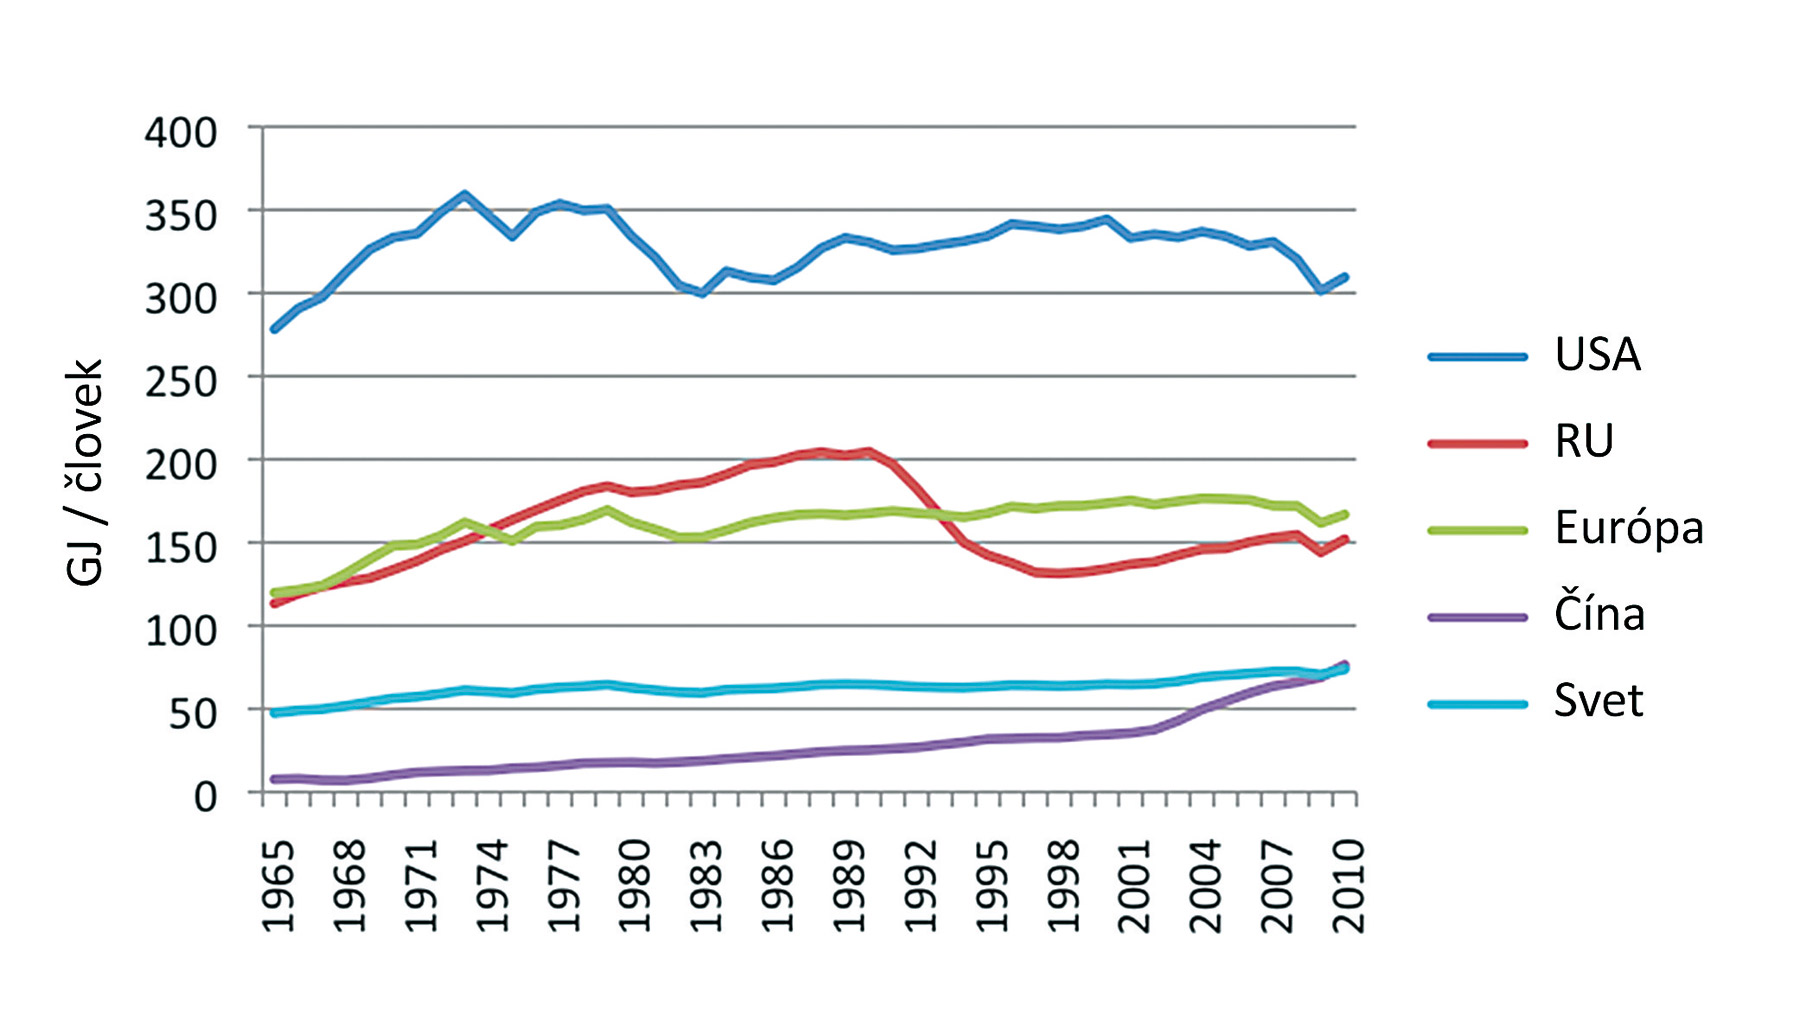 Obr. 5 Priemerná ročná spotreba energie na jedného obyvateľa (RU – krajiny bývalého ZSSR) [26]